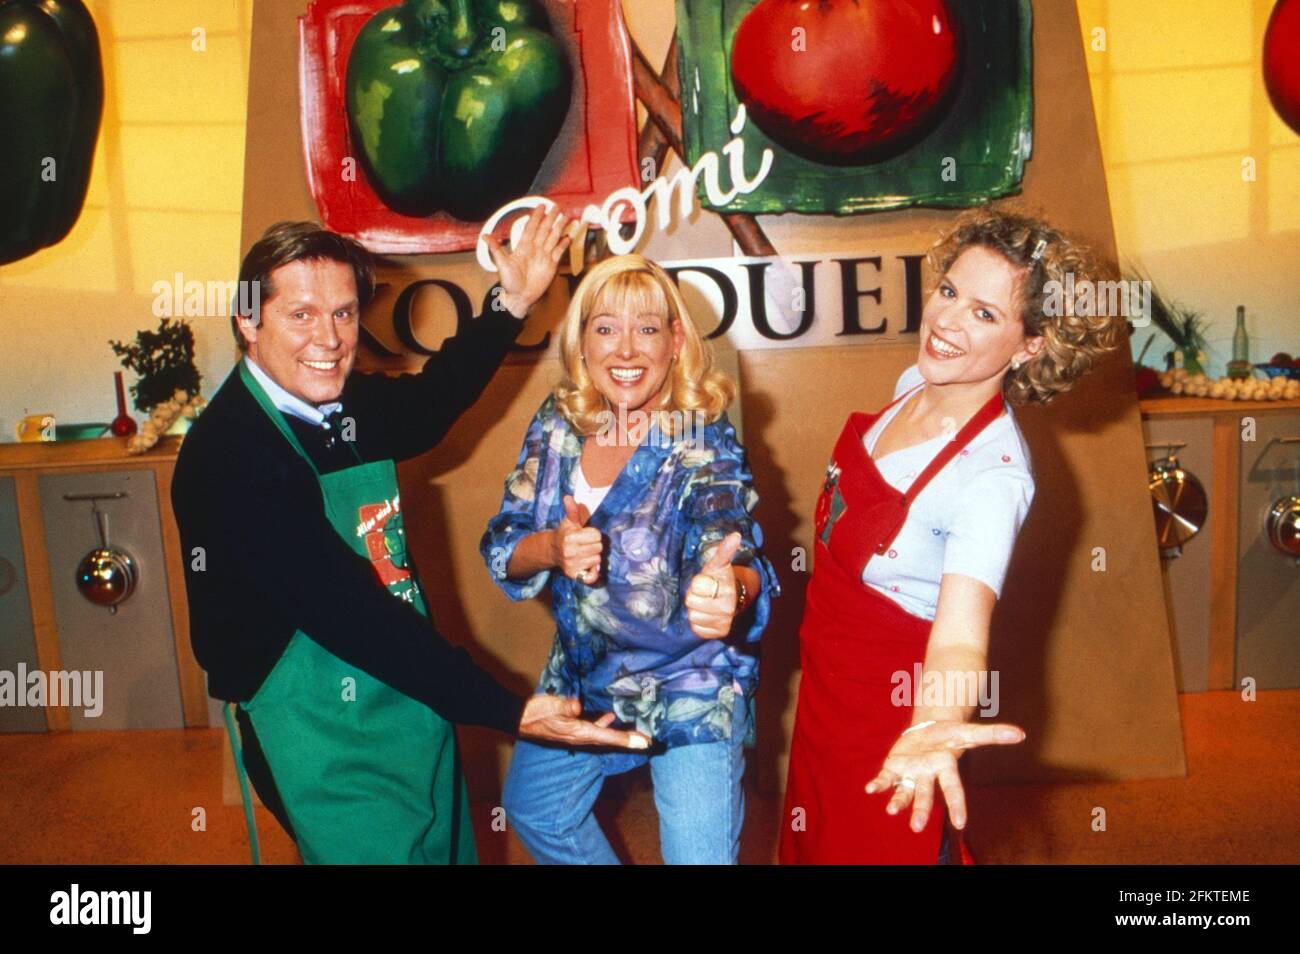 Kochduell, Kochsendung und Spielshow, Deutschland 1997 - 2005, Moderatorin Britta von Lojewski (Mitte) mit Sigmar Solbach und Christiane Brammer Foto Stock